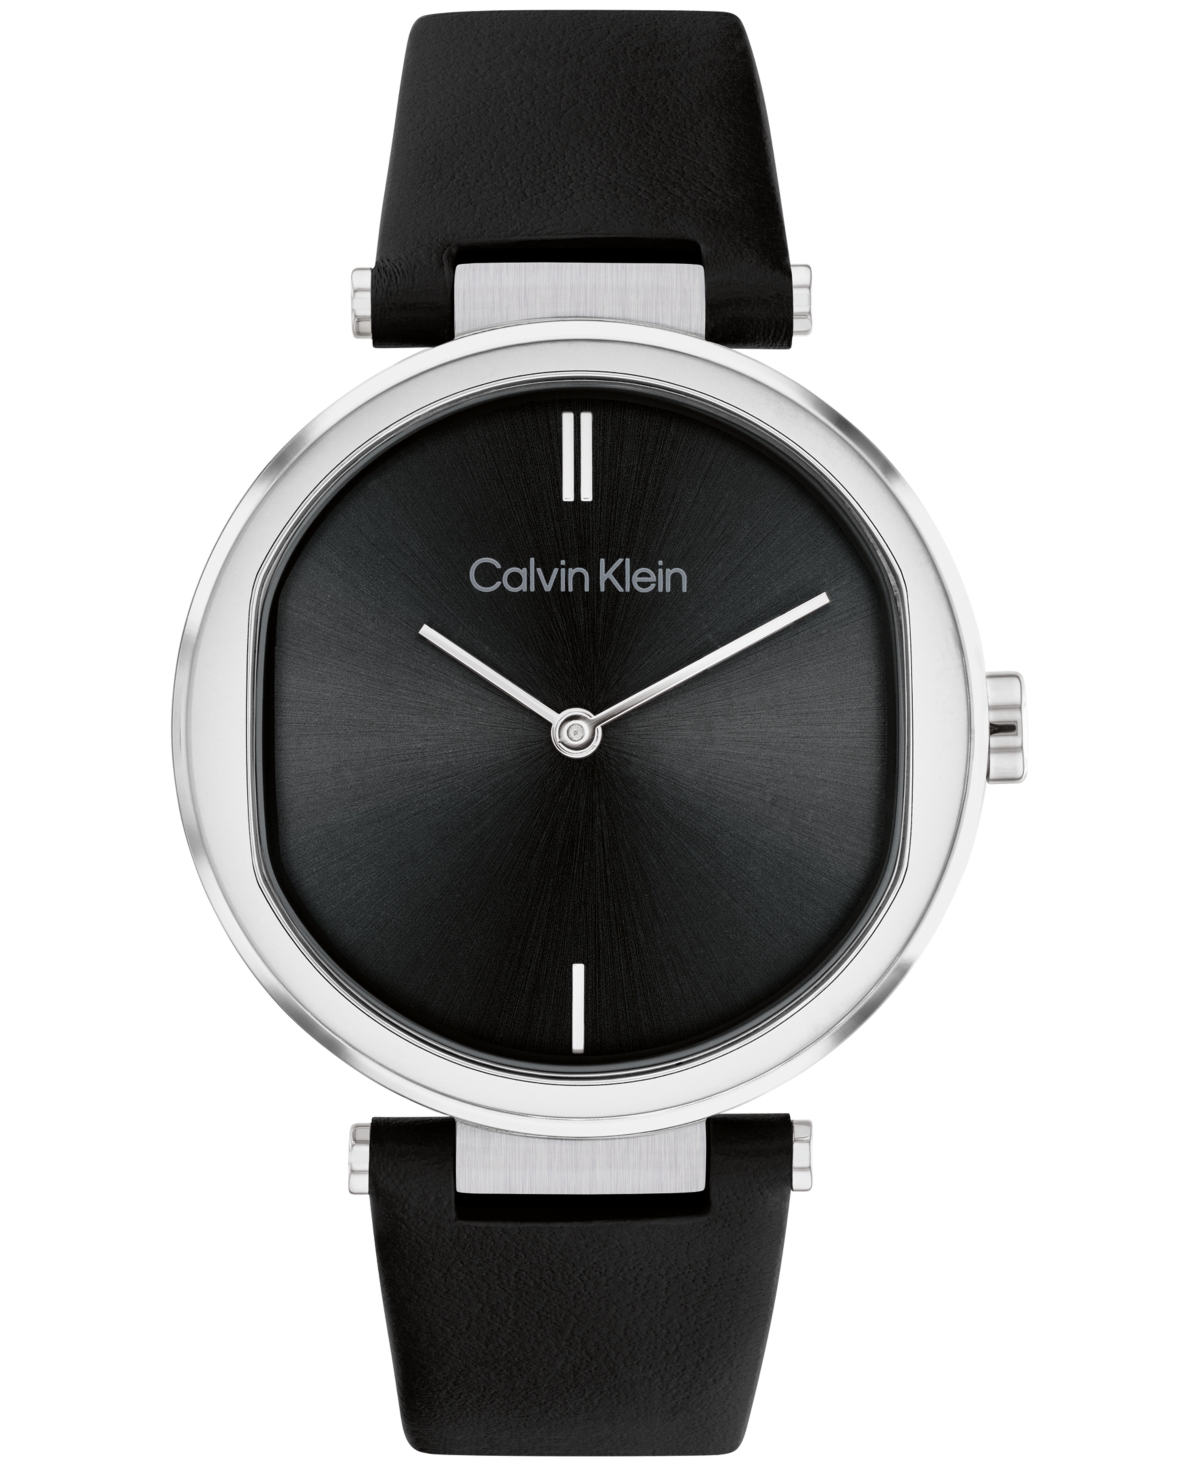 Calvin Klein Women's 2-hand Black Leather Strap Watch 36mm